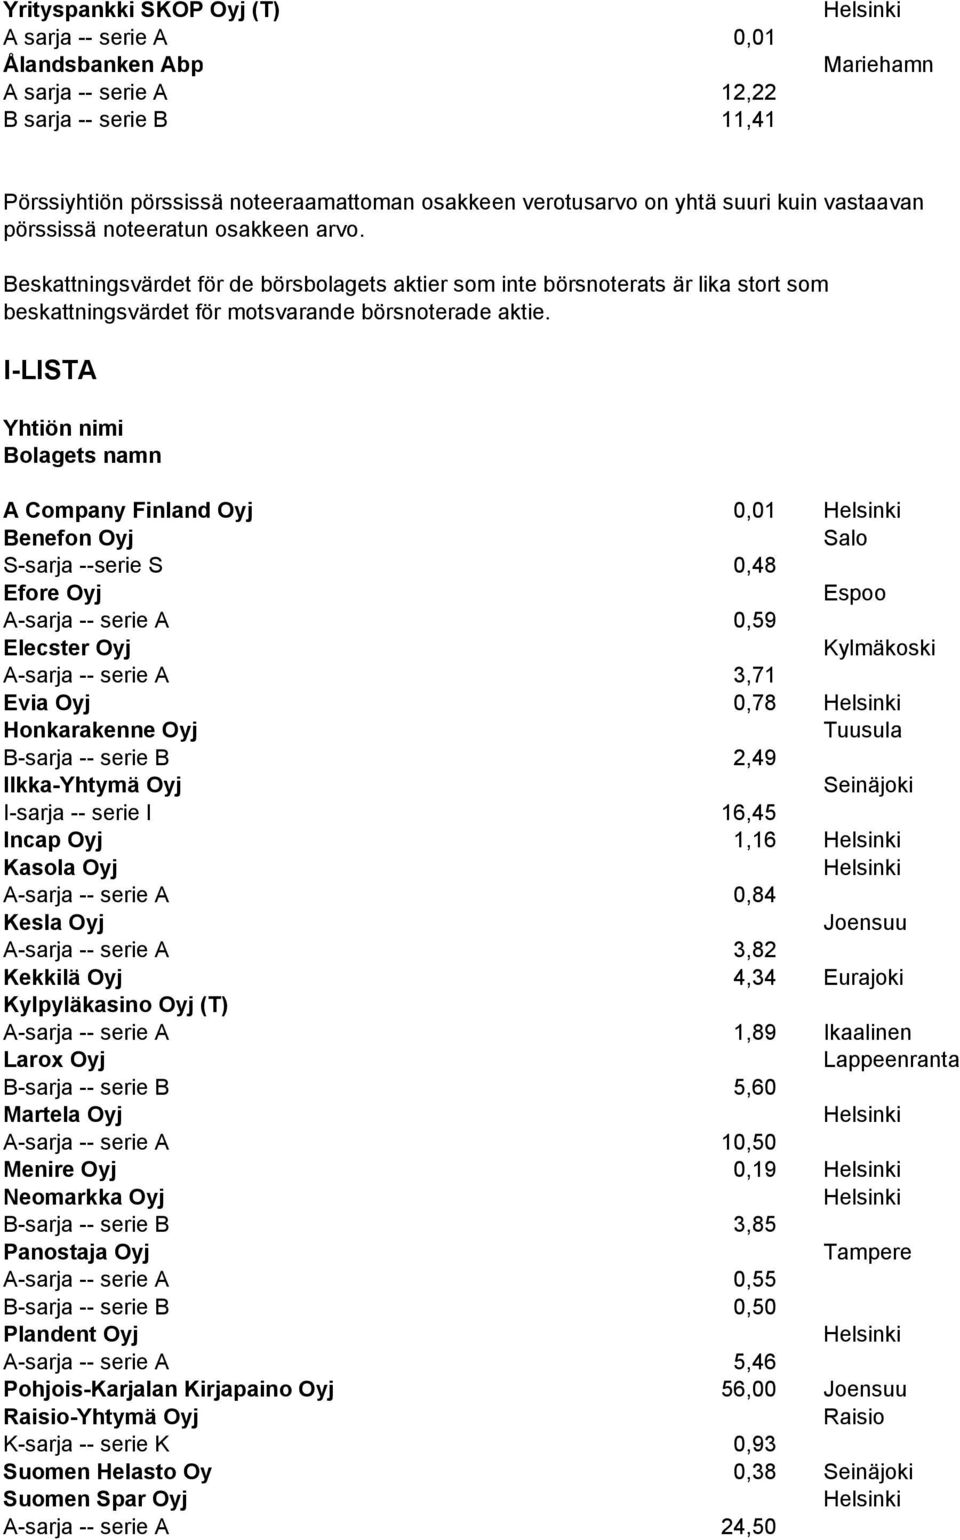 I-LISTA Yhtiön nimi Bolagets namn A Company Finland Oyj 0,01 Benefon Oyj Salo S-sarja --serie S 0,48 Efore Oyj A-sarja -- serie A 0,59 Elecster Oyj Kylmäkoski A-sarja -- serie A 3,71 Evia Oyj 0,78